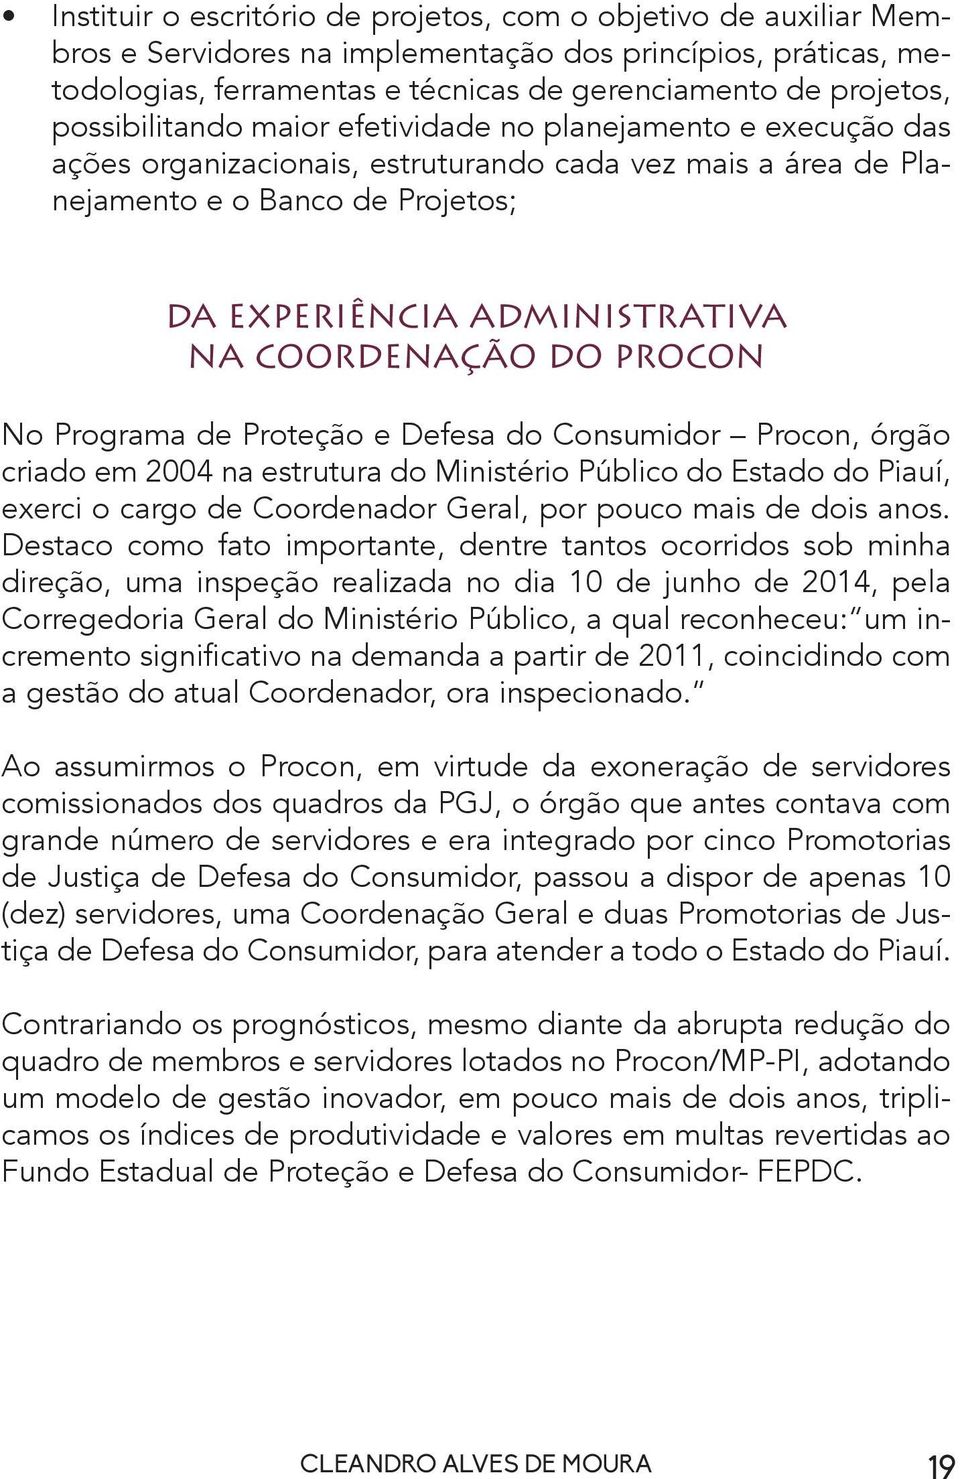 COORDENAÇÃO DO PROCON No Programa de Proteção e Defesa do Consumidor Procon, órgão criado em 2004 na estrutura do Ministério Público do Estado do Piauí, exerci o cargo de Coordenador Geral, por pouco